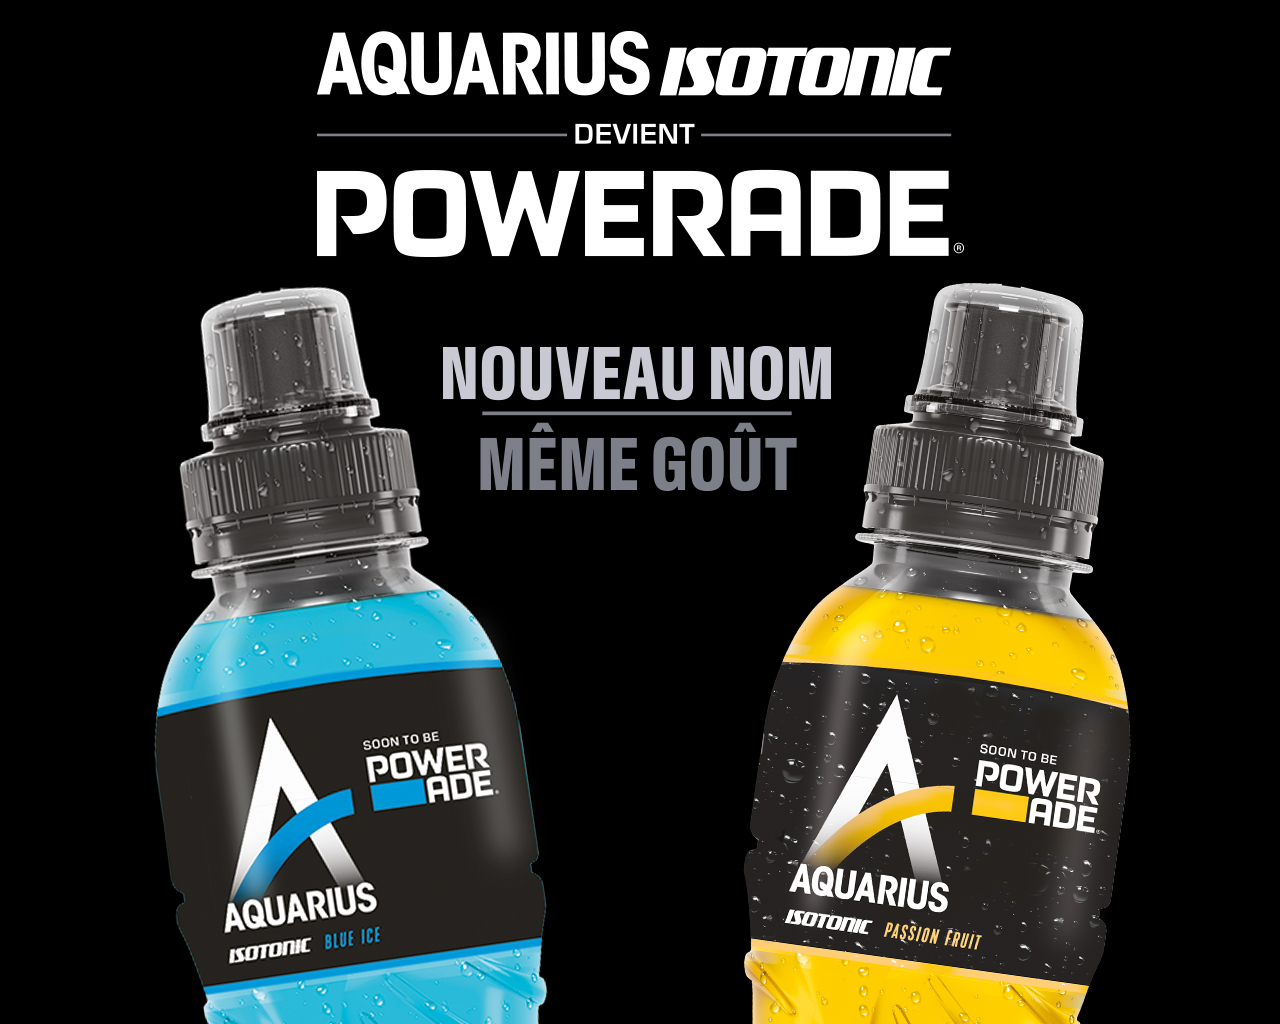 Aquarius Isotonic devient Powerade Nouveau nom Mem Gout